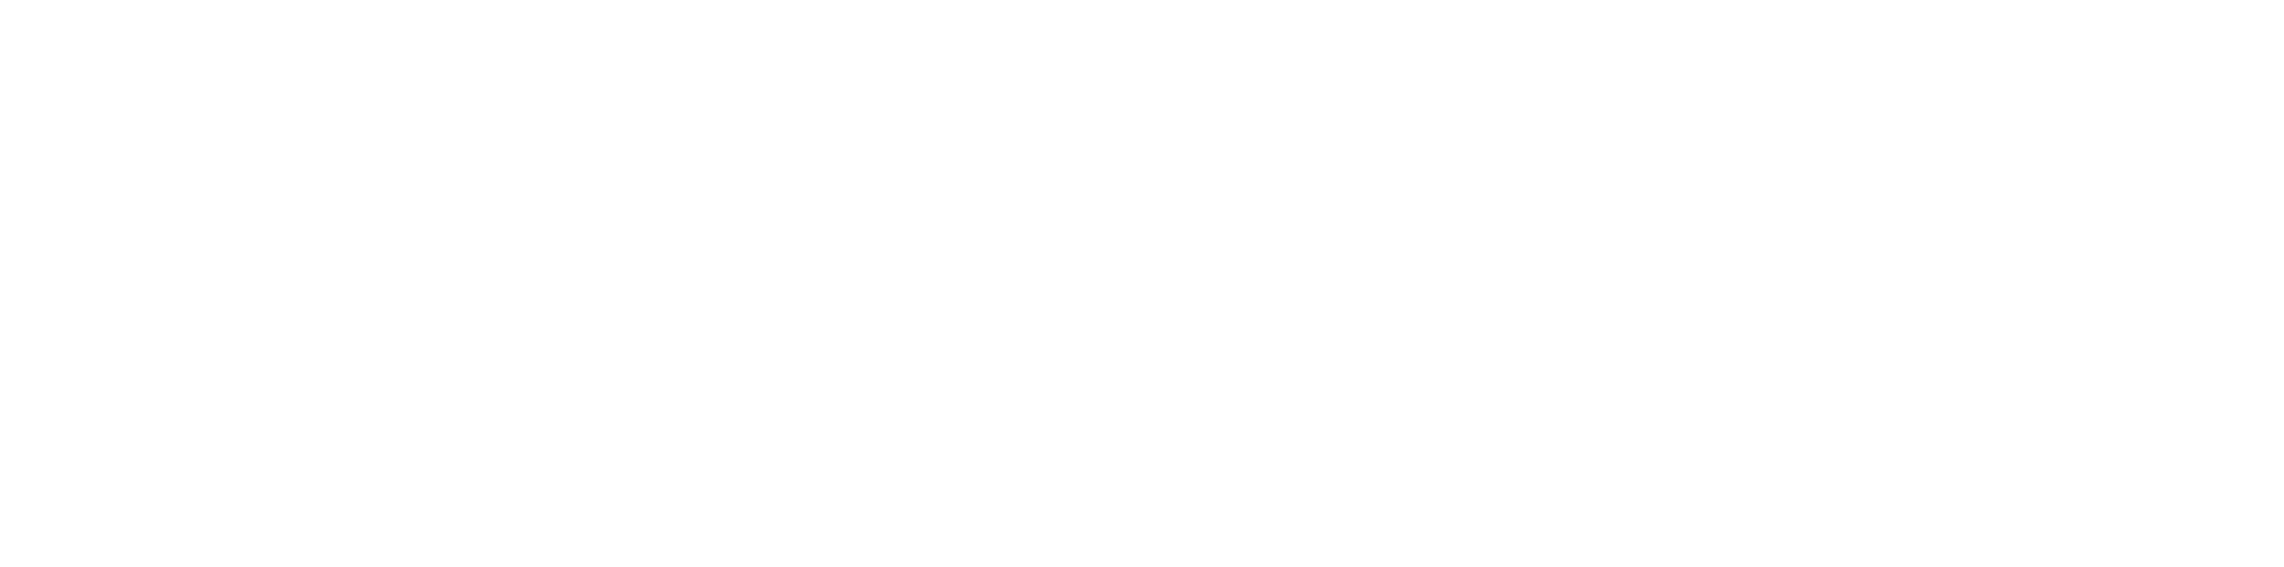 Nieuwkomersregistratie